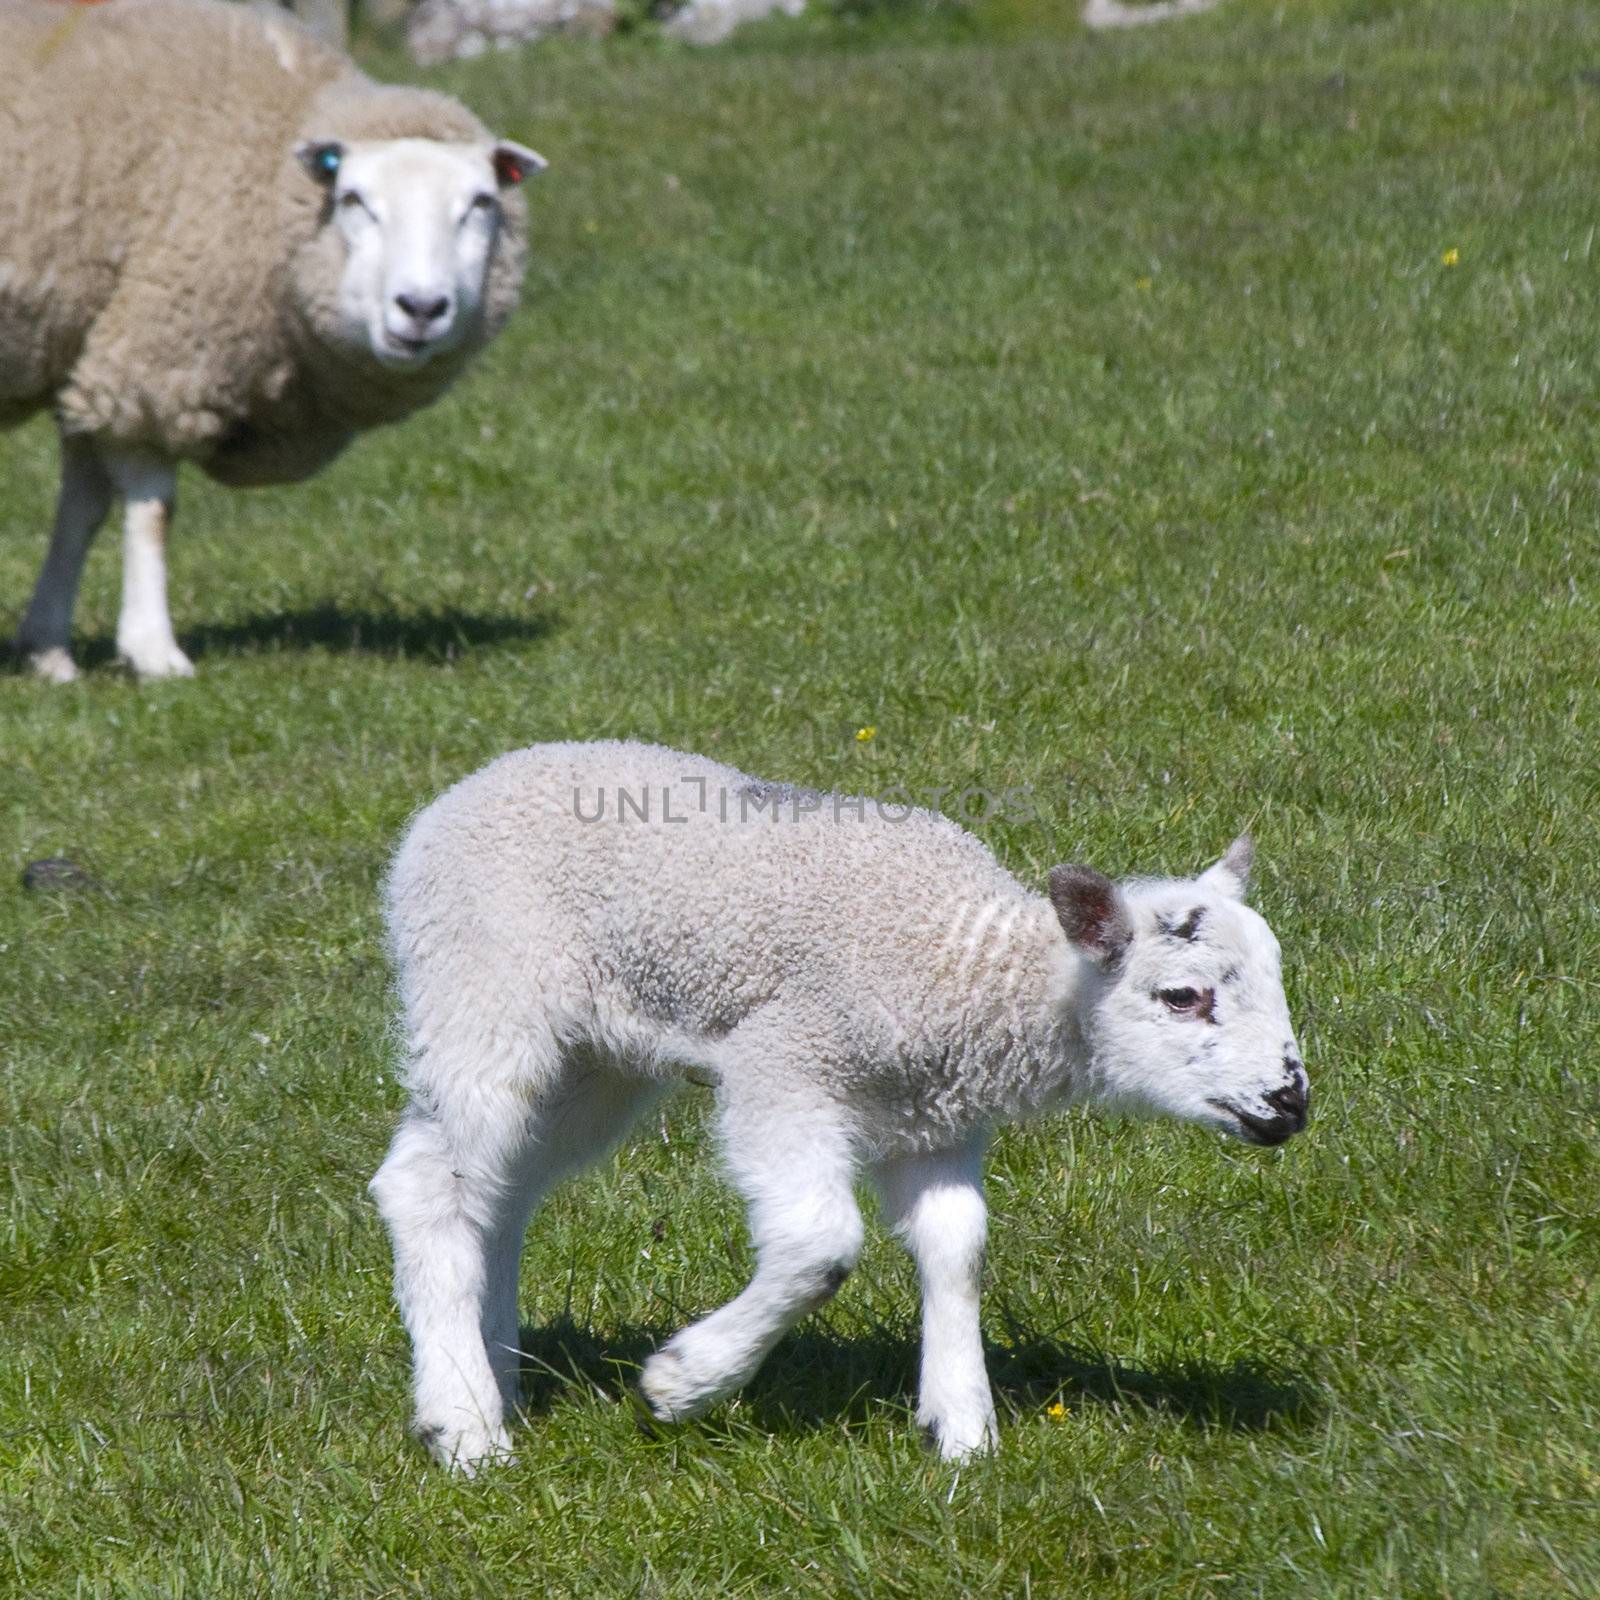 Lamb in field by yorkman